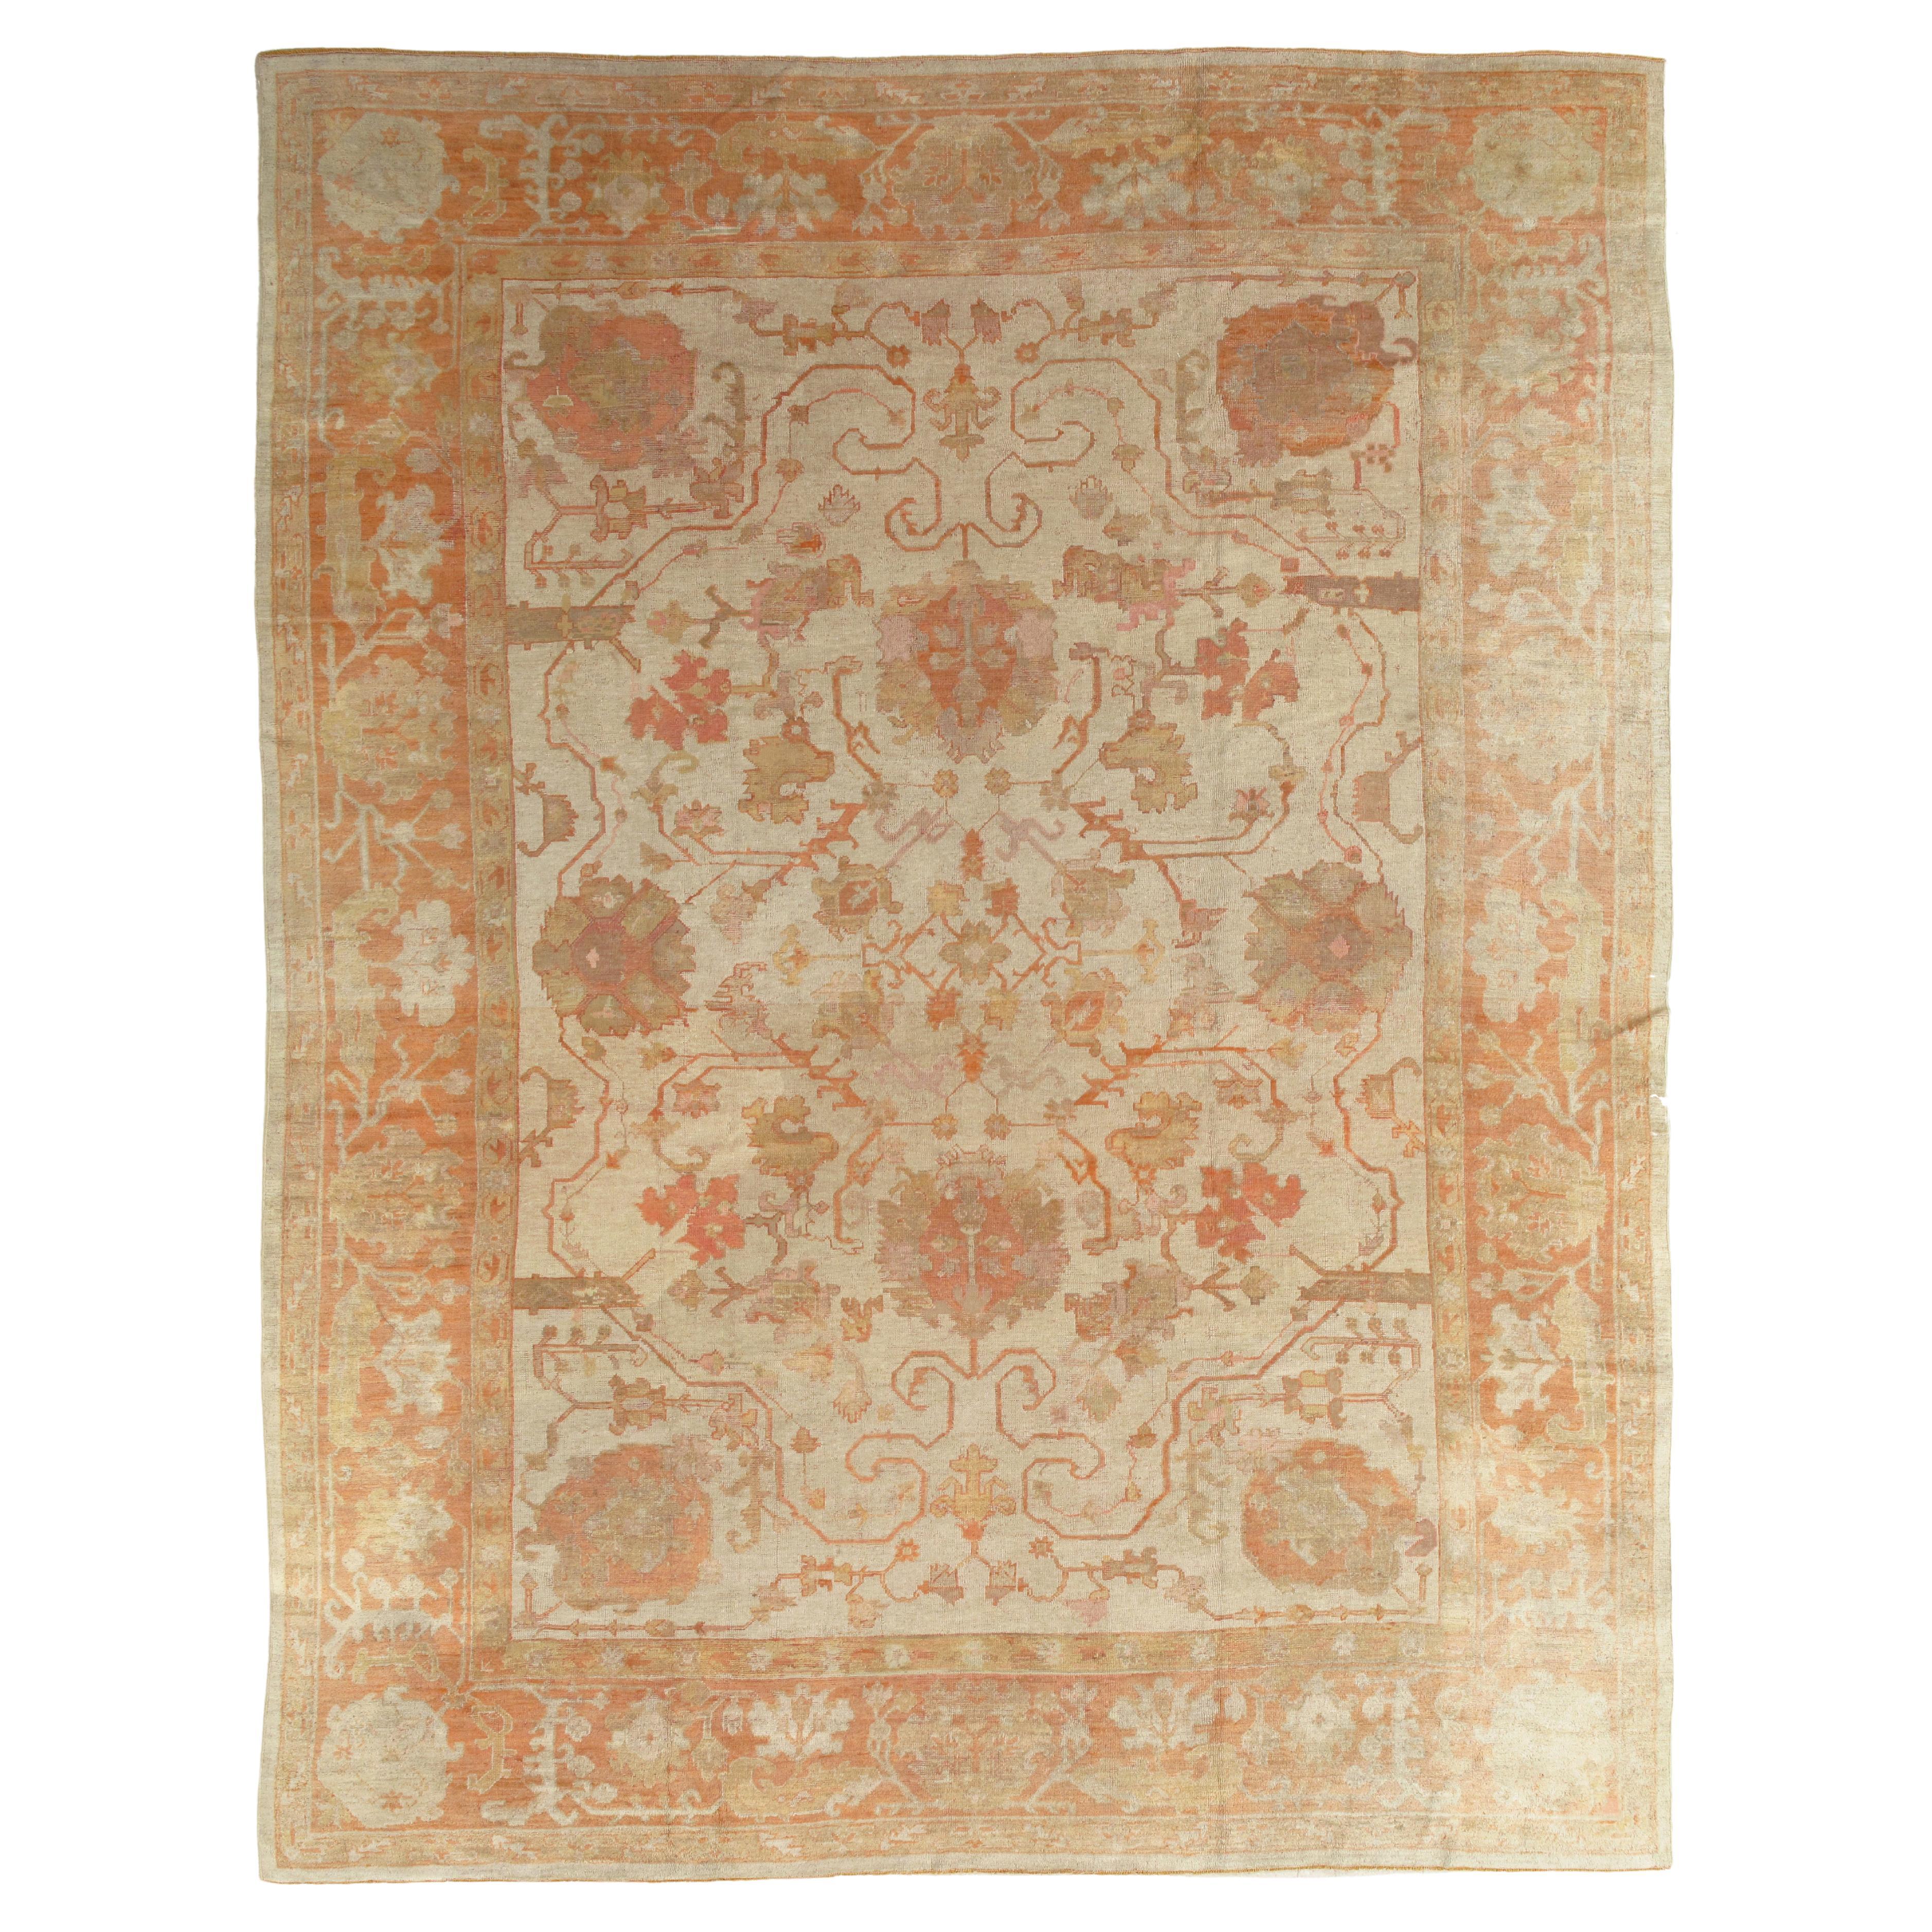 Antique Turkish Oushak Carpet, Handmade Oriental Rug, Beige, Taupe, Shrimp Coral For Sale